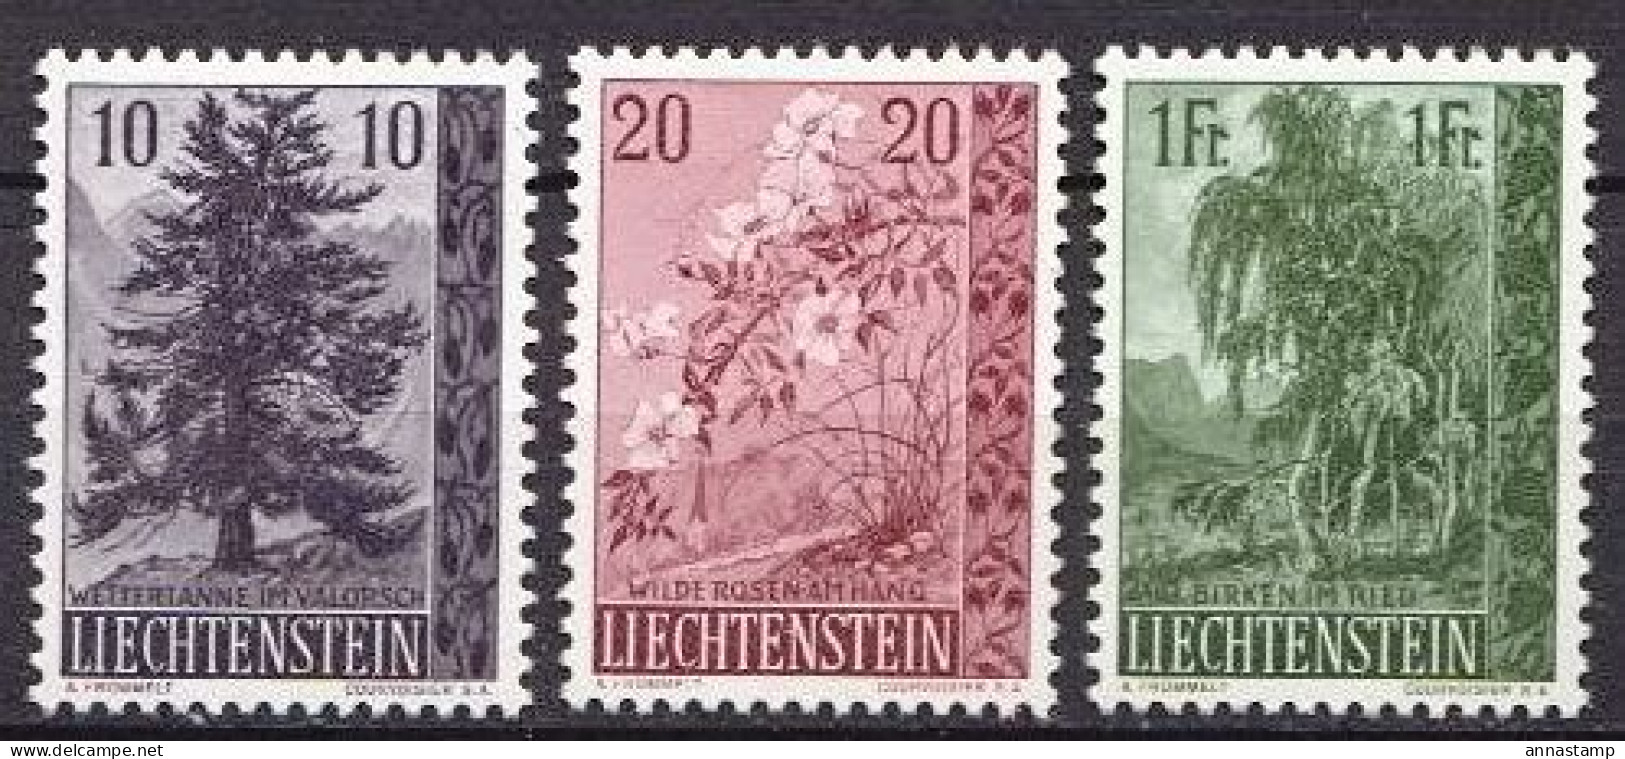 Liechtenstein MNH Set - Trees